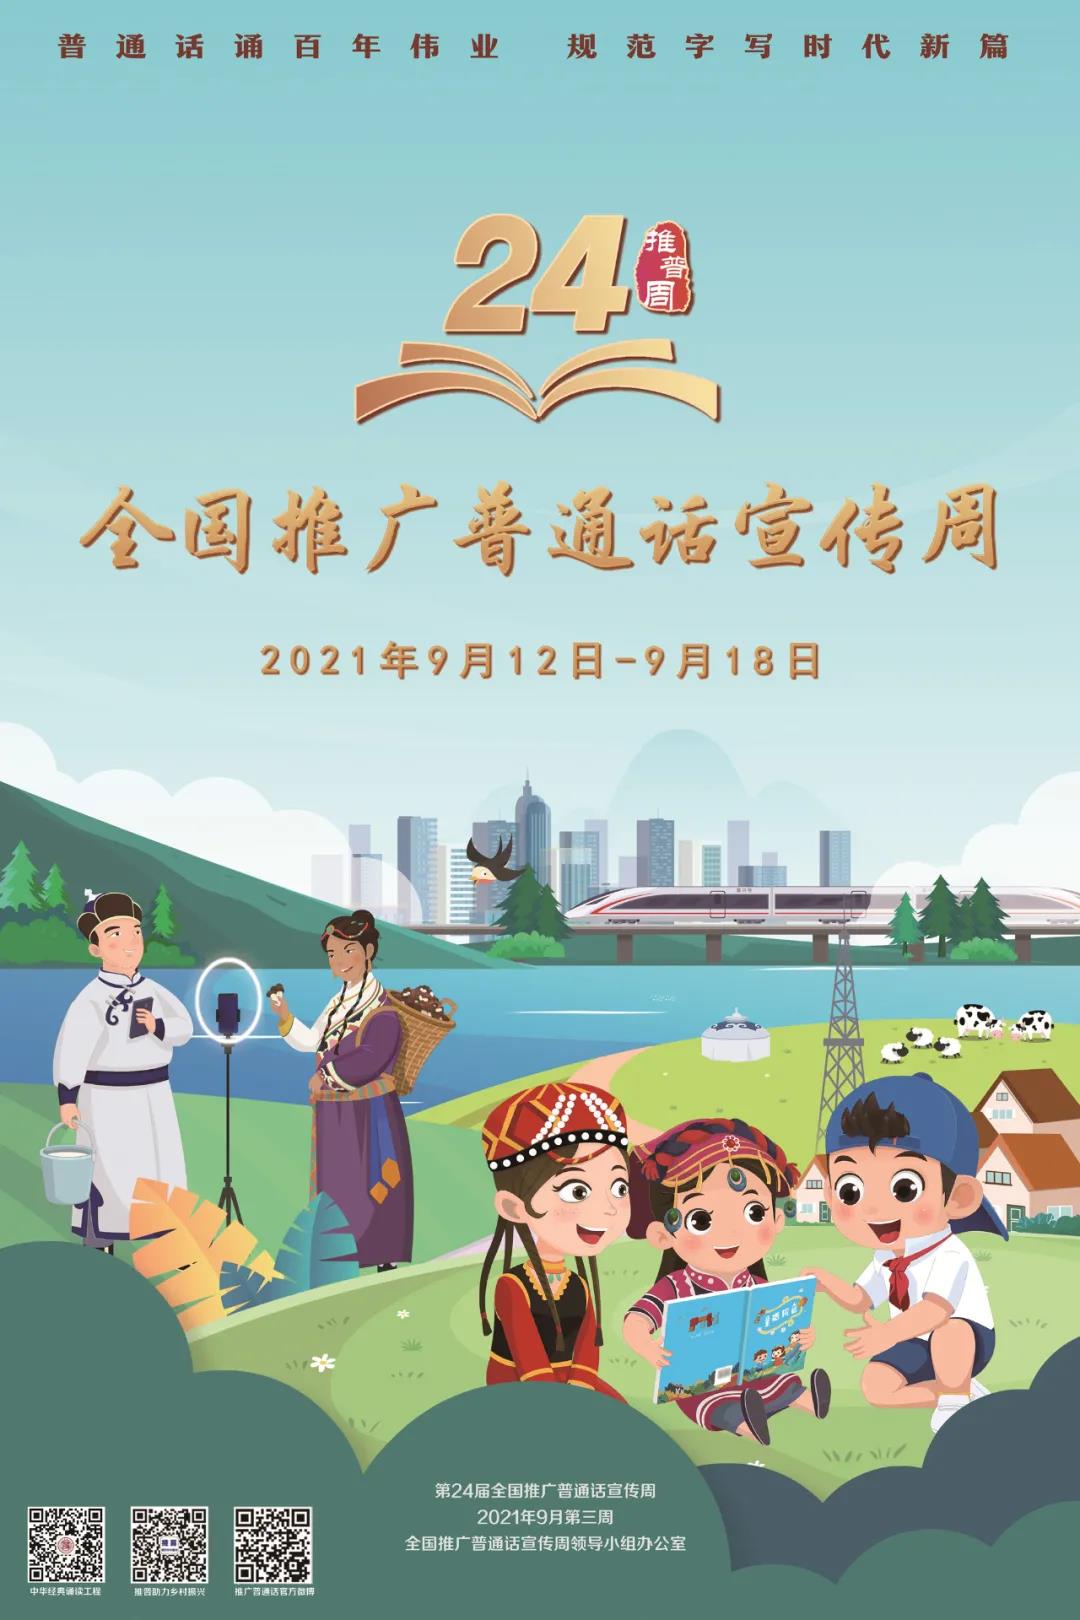 第24届全国推广普通话宣传周开启